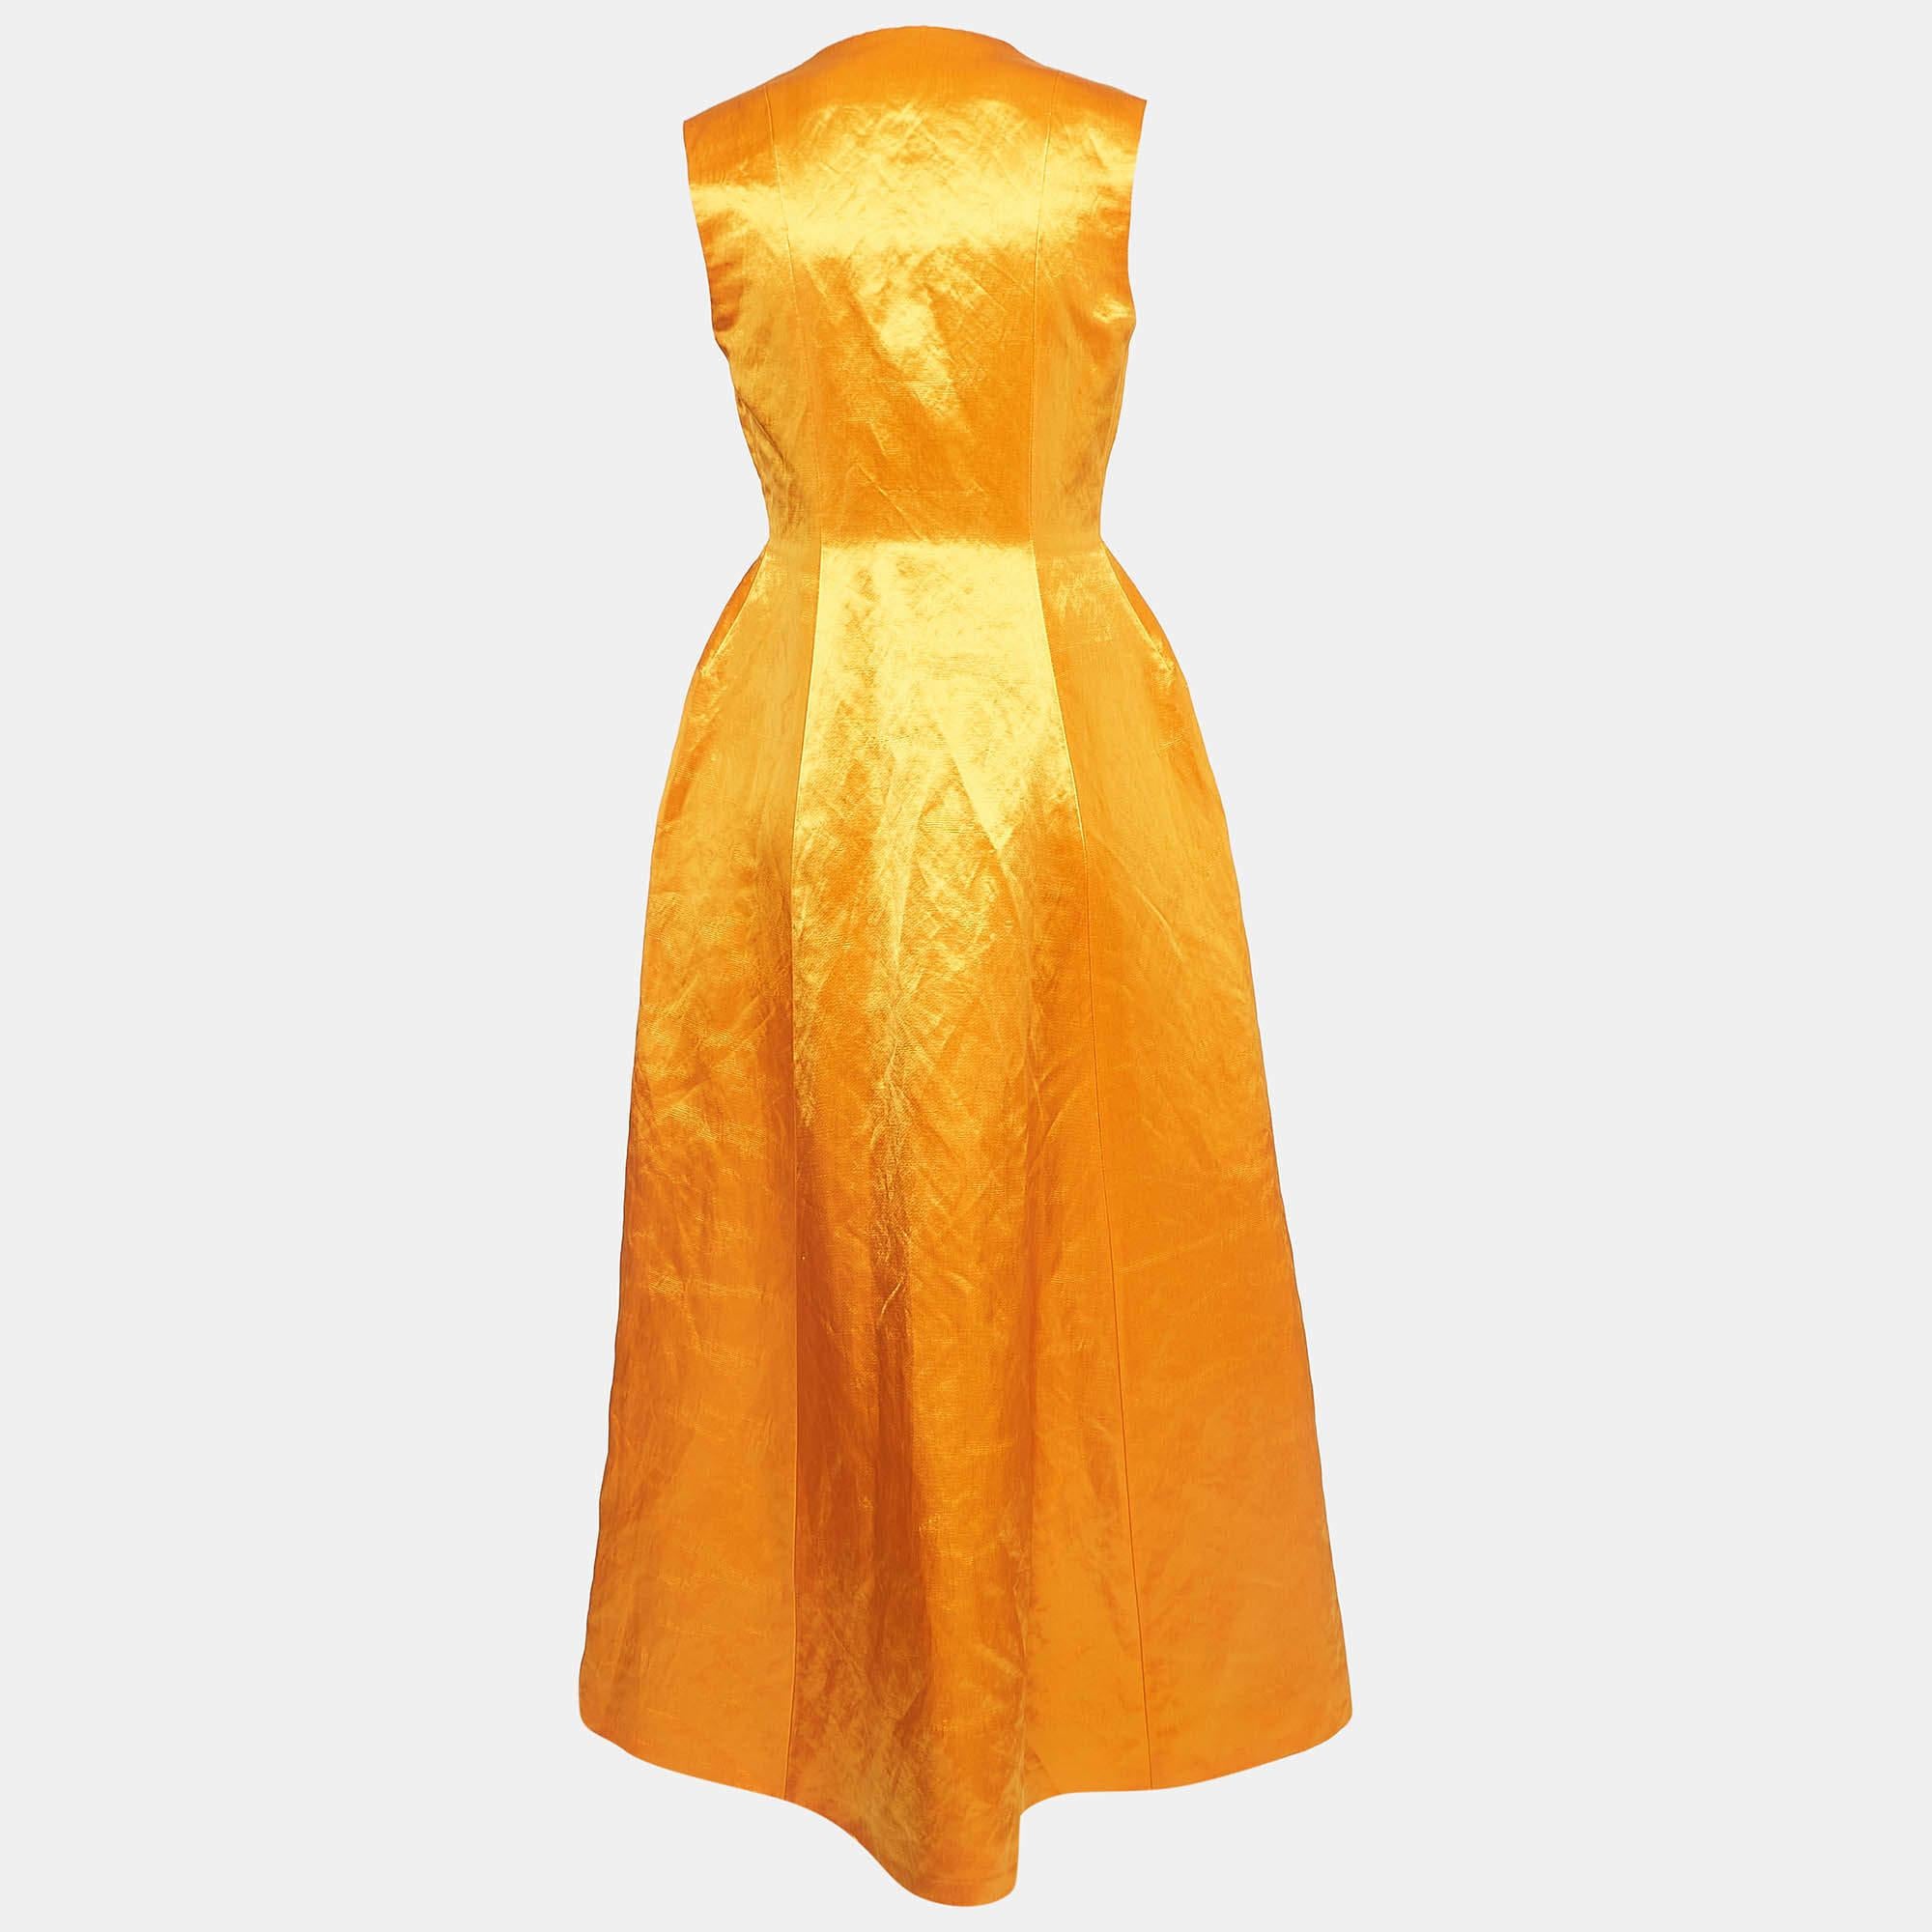 Ein prächtiger Orangeton und ein eleganter Schnitt machen den Charme dieses Maxikleids von Dior aus. Die aus Satin geschneiderte Kreation hat einen Taillengürtel und einen Hakenverschluss für die gewünschte Passform. Ergänzen Sie dieses Kleid mit